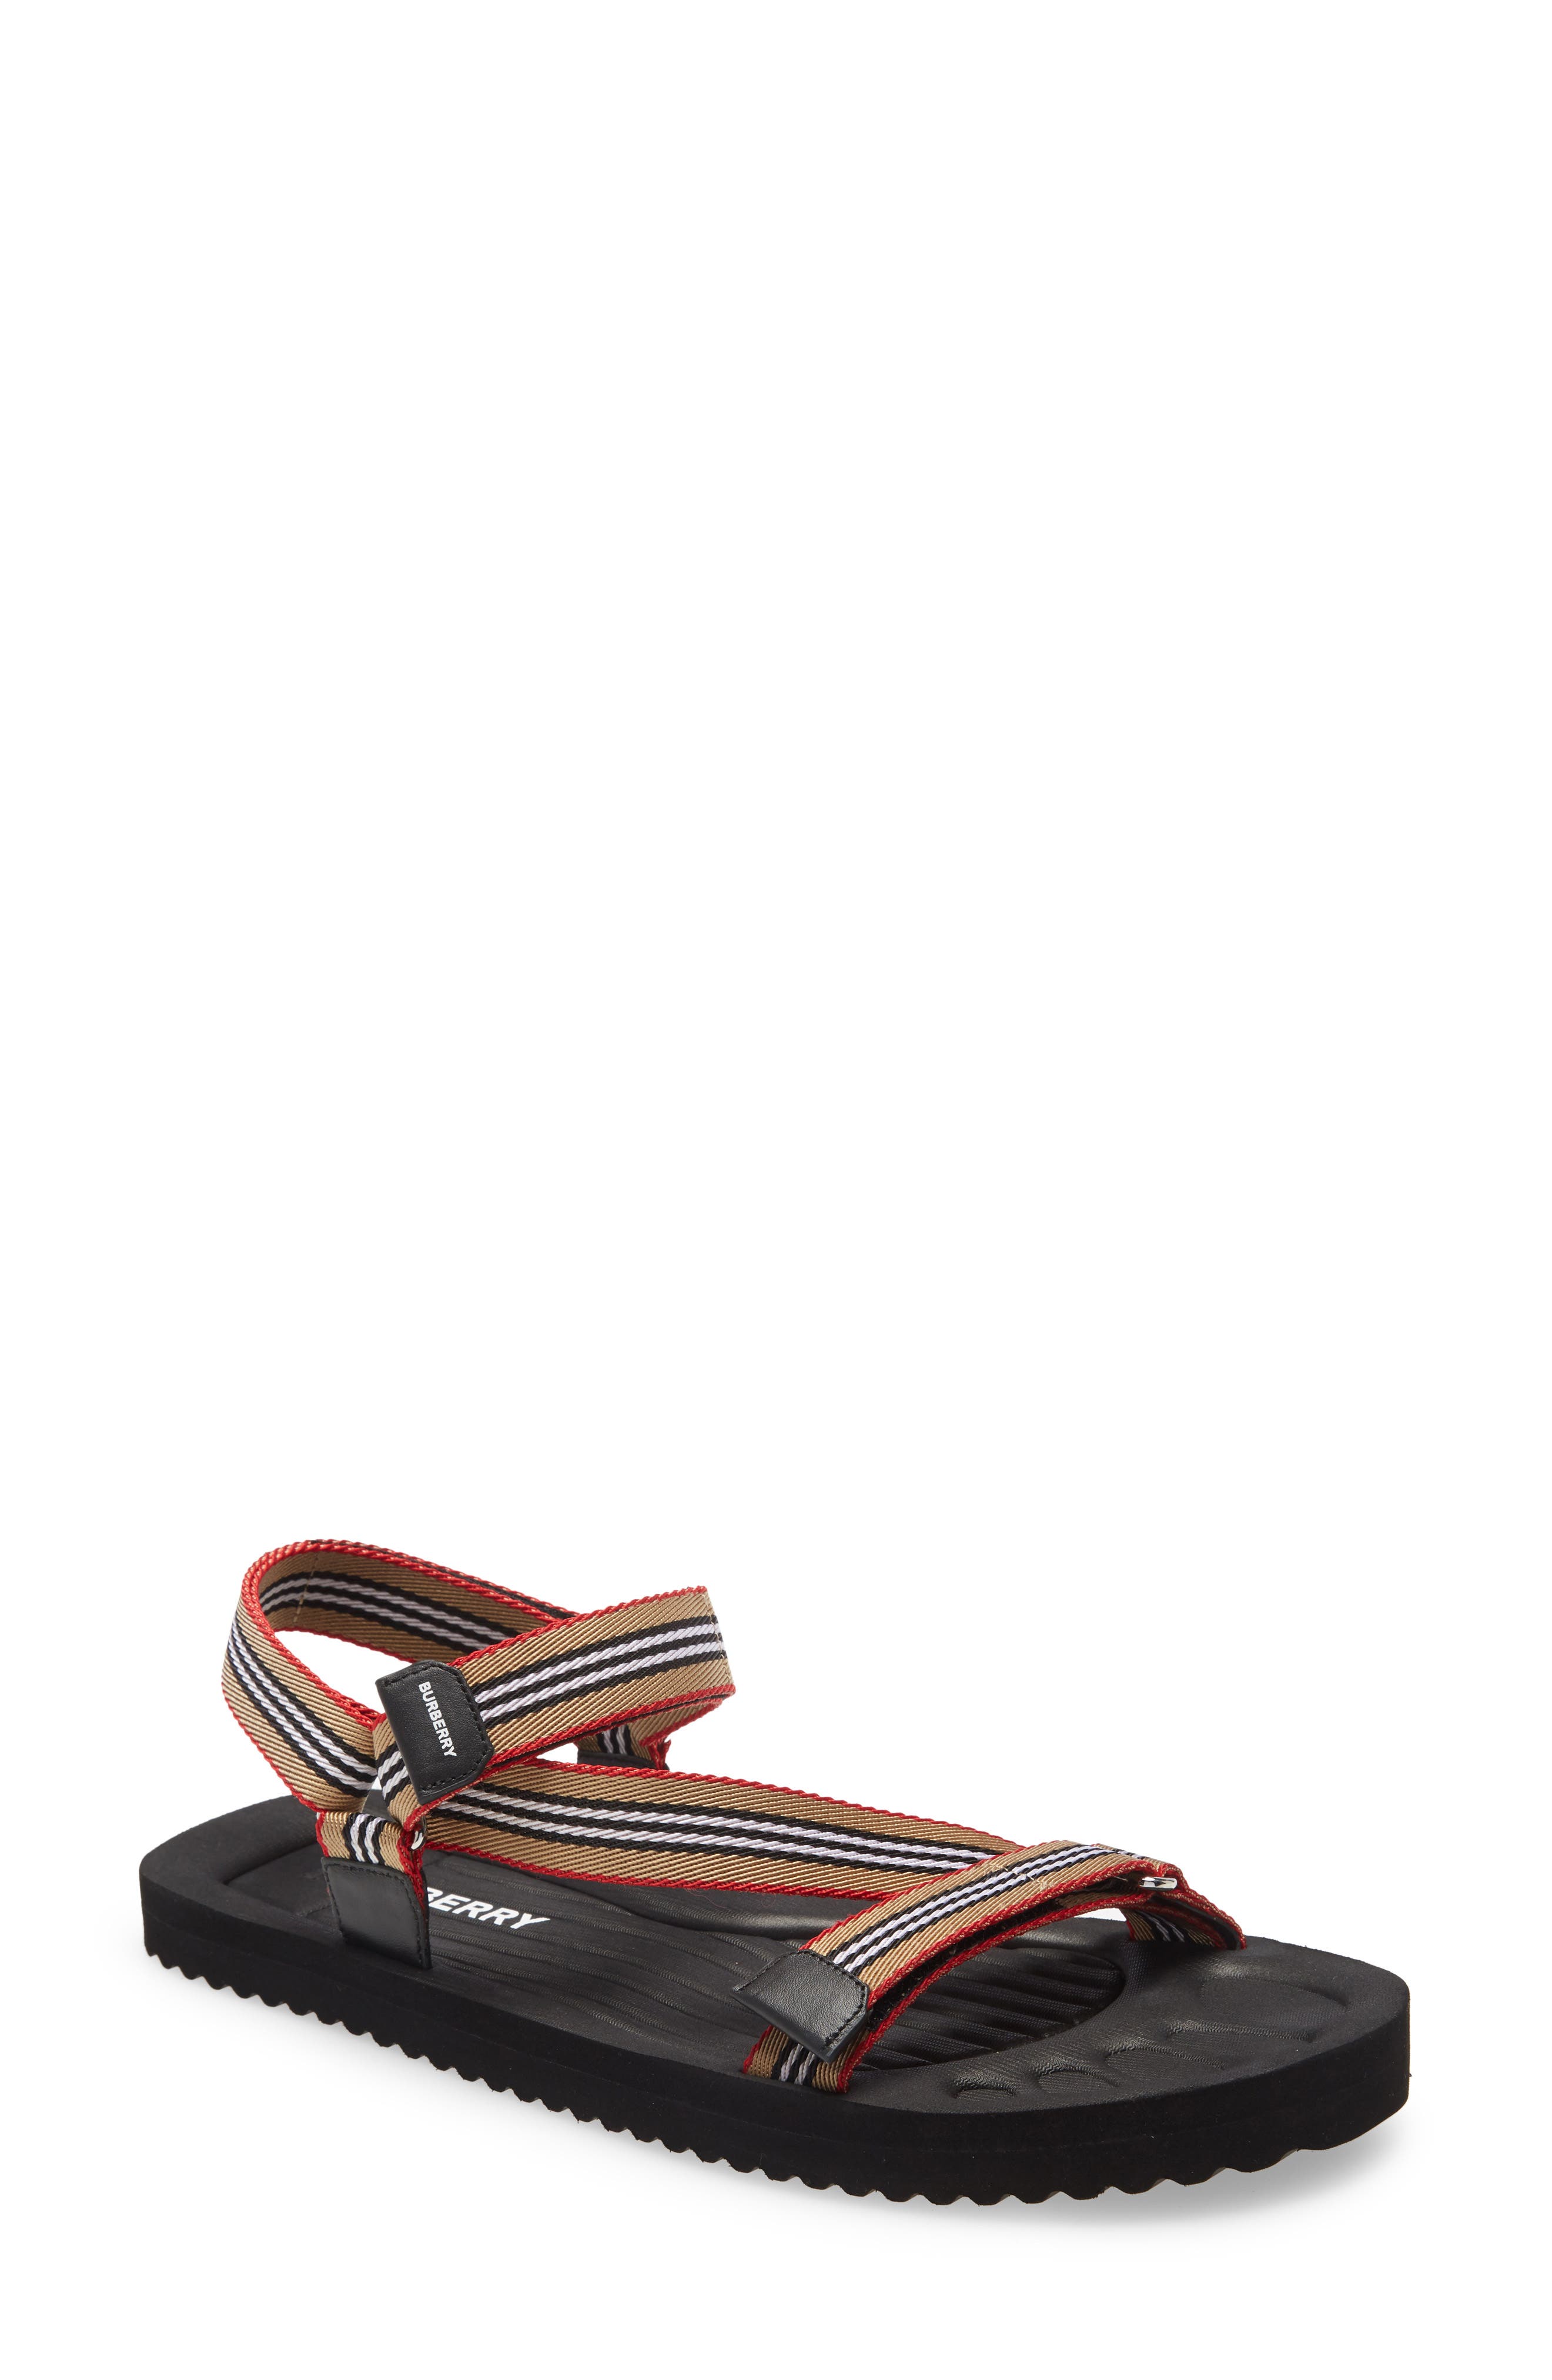 Burberry Sandals, Slides \u0026 Flip-Flops 